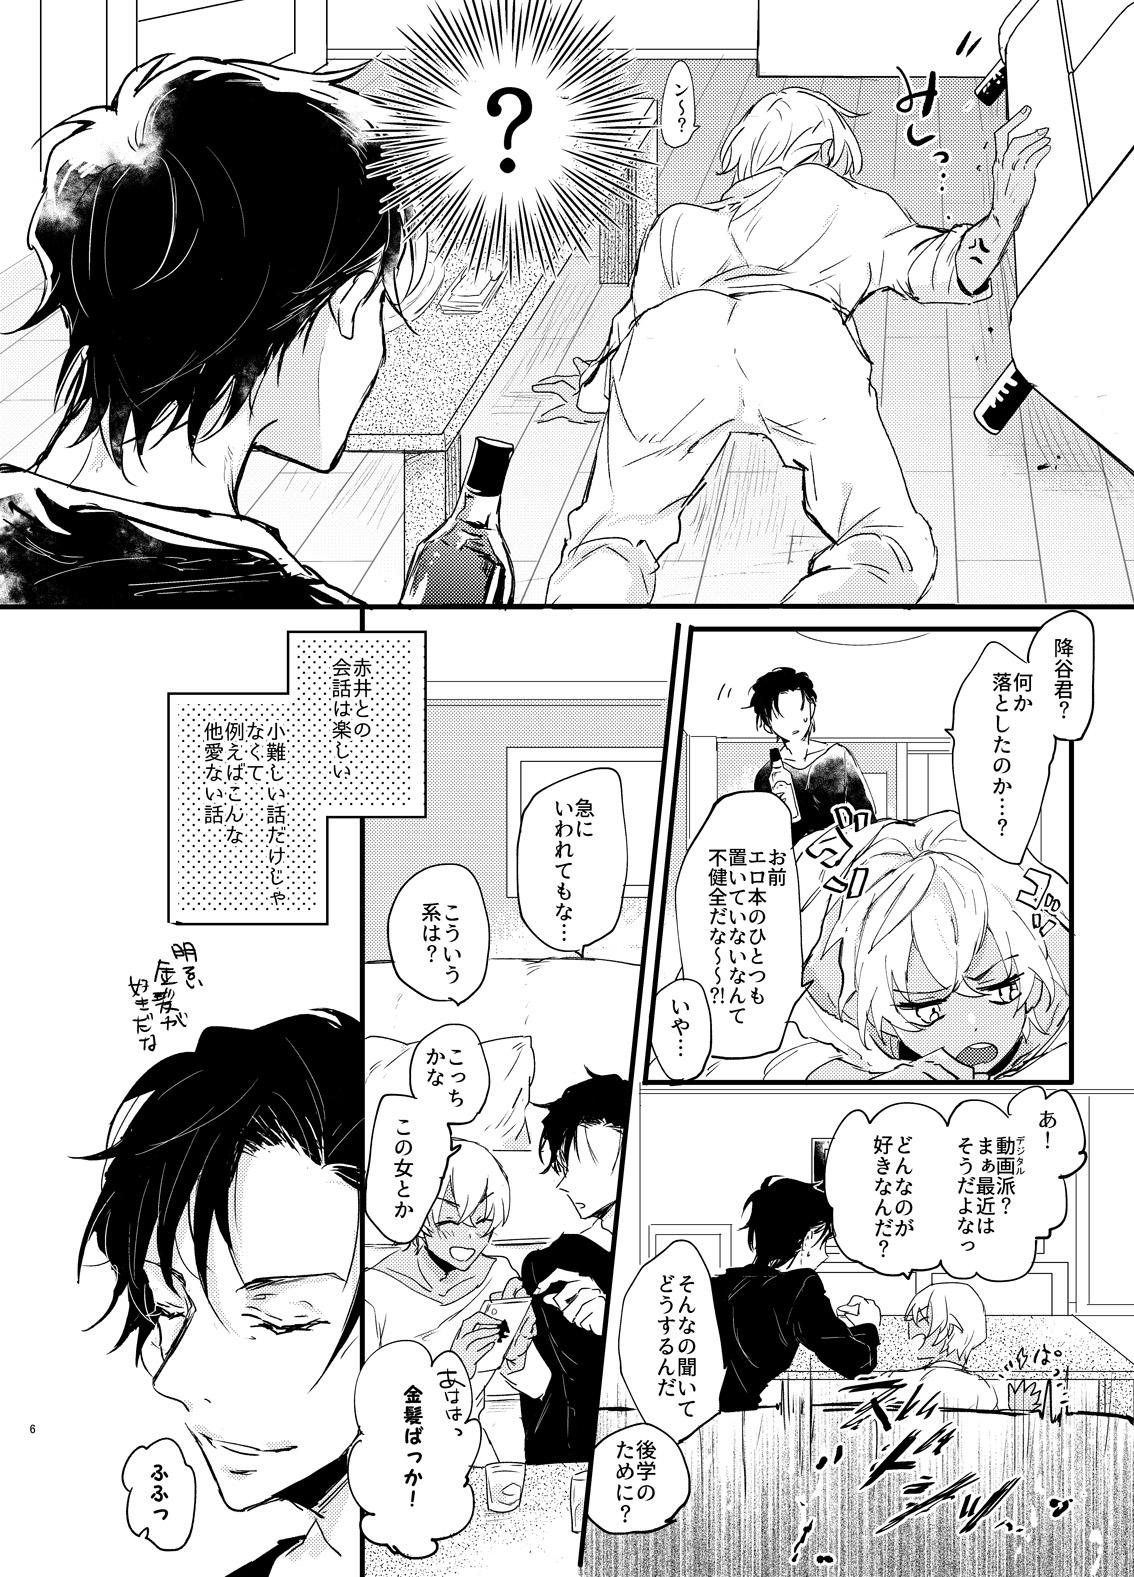 Lesbian End Roll wa Yume no Ato ni. - Detective conan Village - Page 5